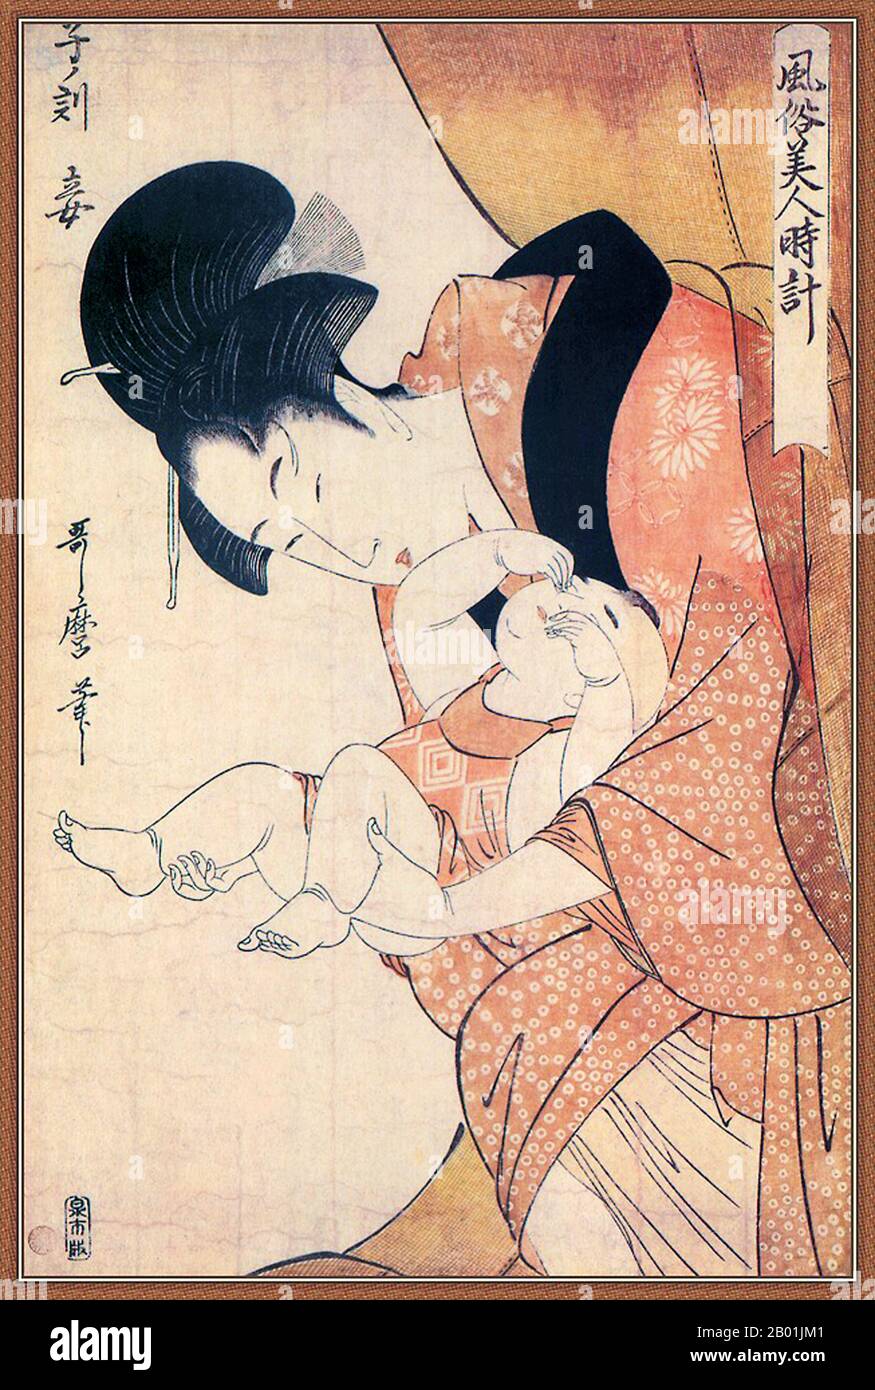 Japan: Mitternacht - Mutter und schläfriges Kind. Ukiyo-e-Holzblockdruck von Kitagawa Utamaro (ca. 1753. Bis 31. Oktober 1806), 1790. Kitagawa Utamaro war ein japanischer Druckmacher und Maler, der als einer der größten Künstler von Holzblockdrucken gilt (Ukiyo-e). Er ist vor allem bekannt für seine meisterhaft zusammengestellten Studien über Frauen, bekannt als Bijinga. Er produzierte auch Naturstudien, insbesondere illustrierte Bücher über Insekten. Stockfoto